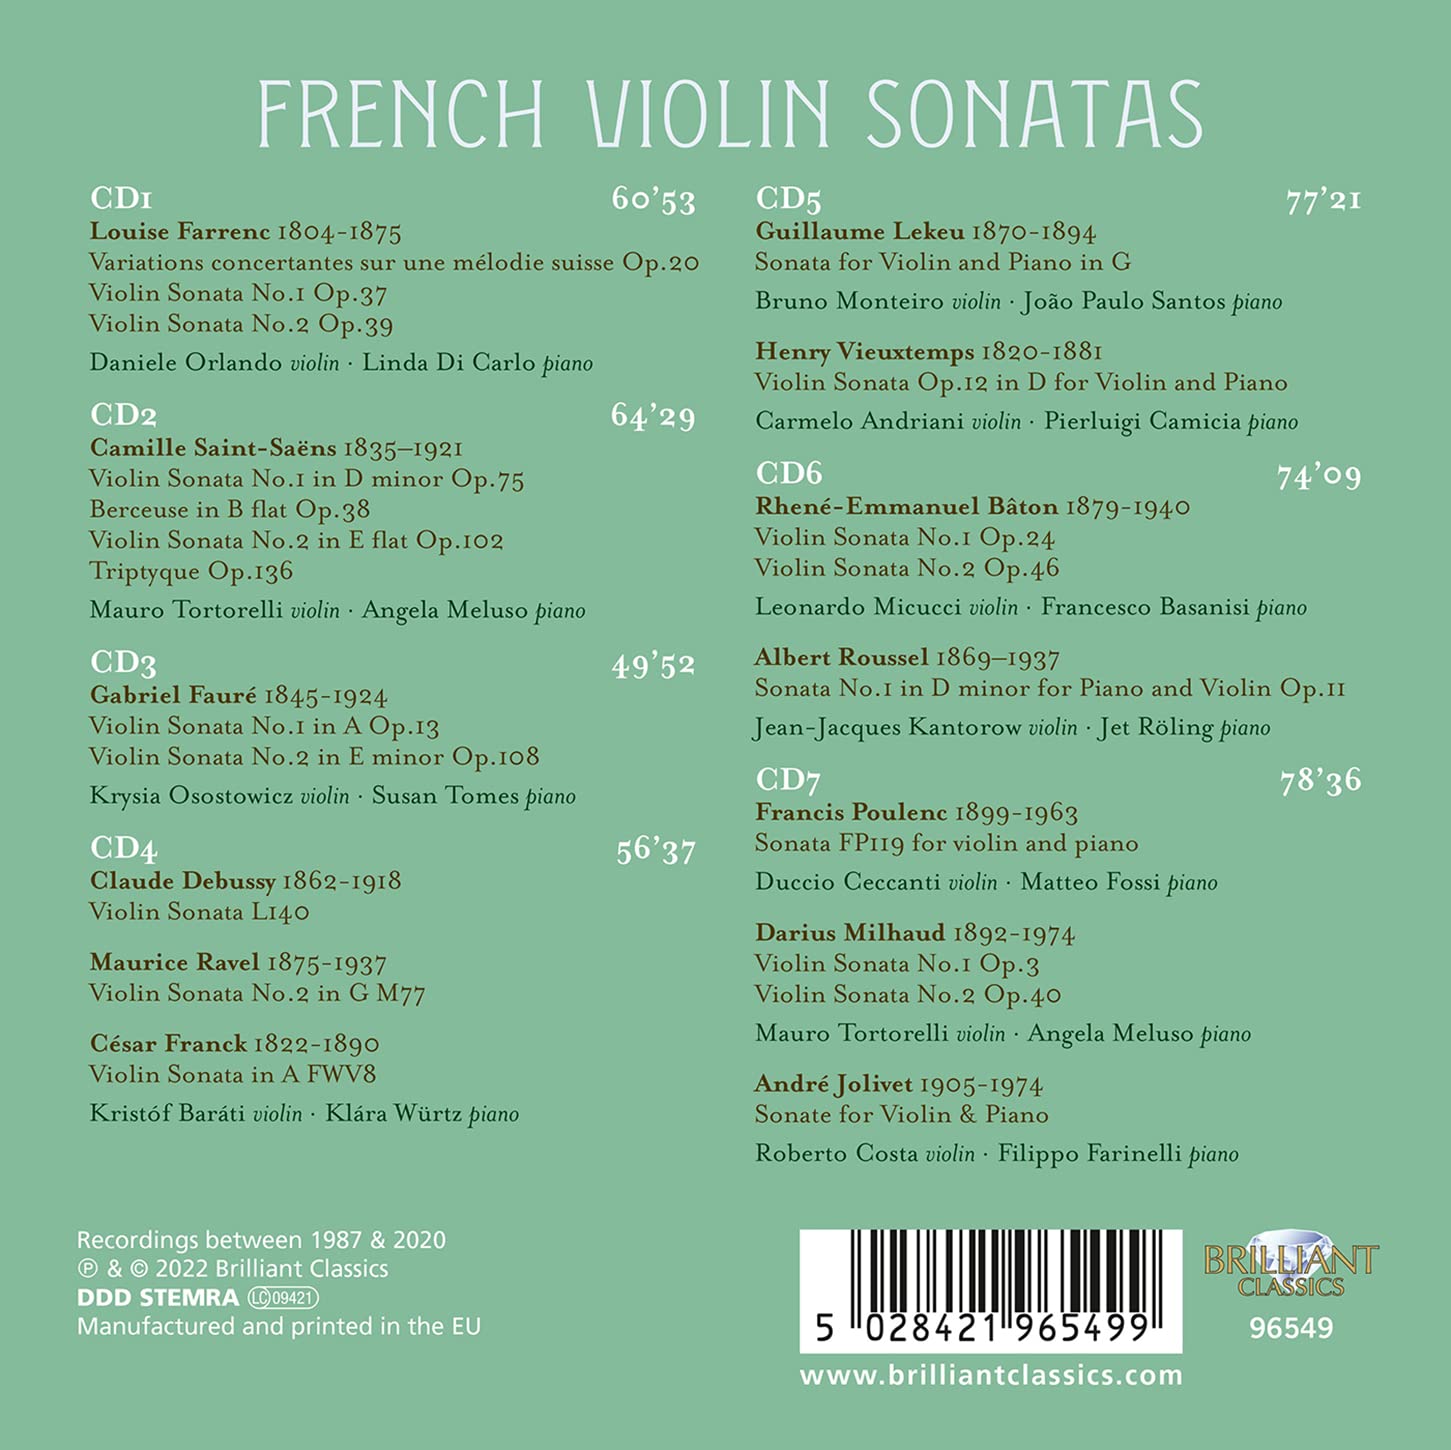 프랑스 작곡가들의 바이올린 소나타 모음집 (French Violin Sonatas) 